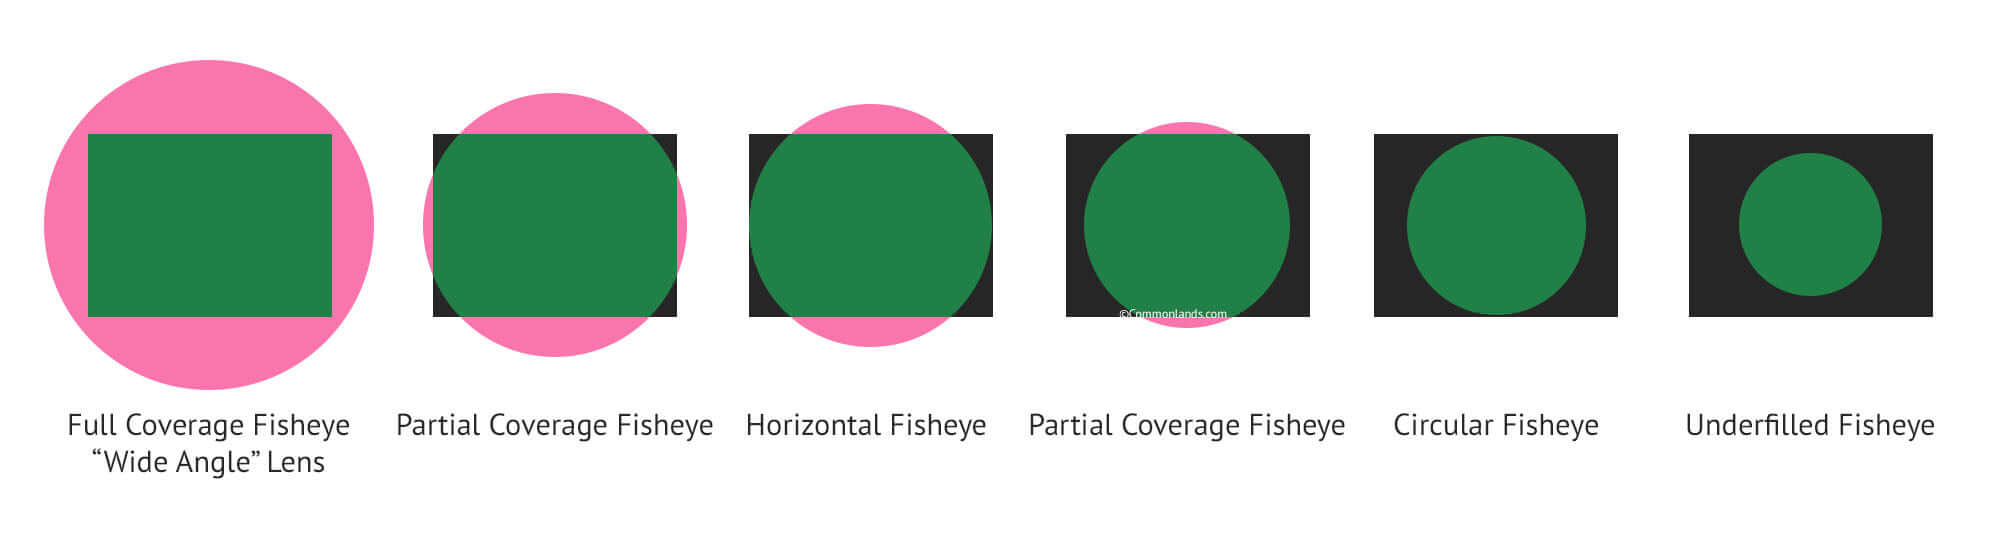 Objectifs grand angle et distorsion de l'objectif de la caméra fisheye